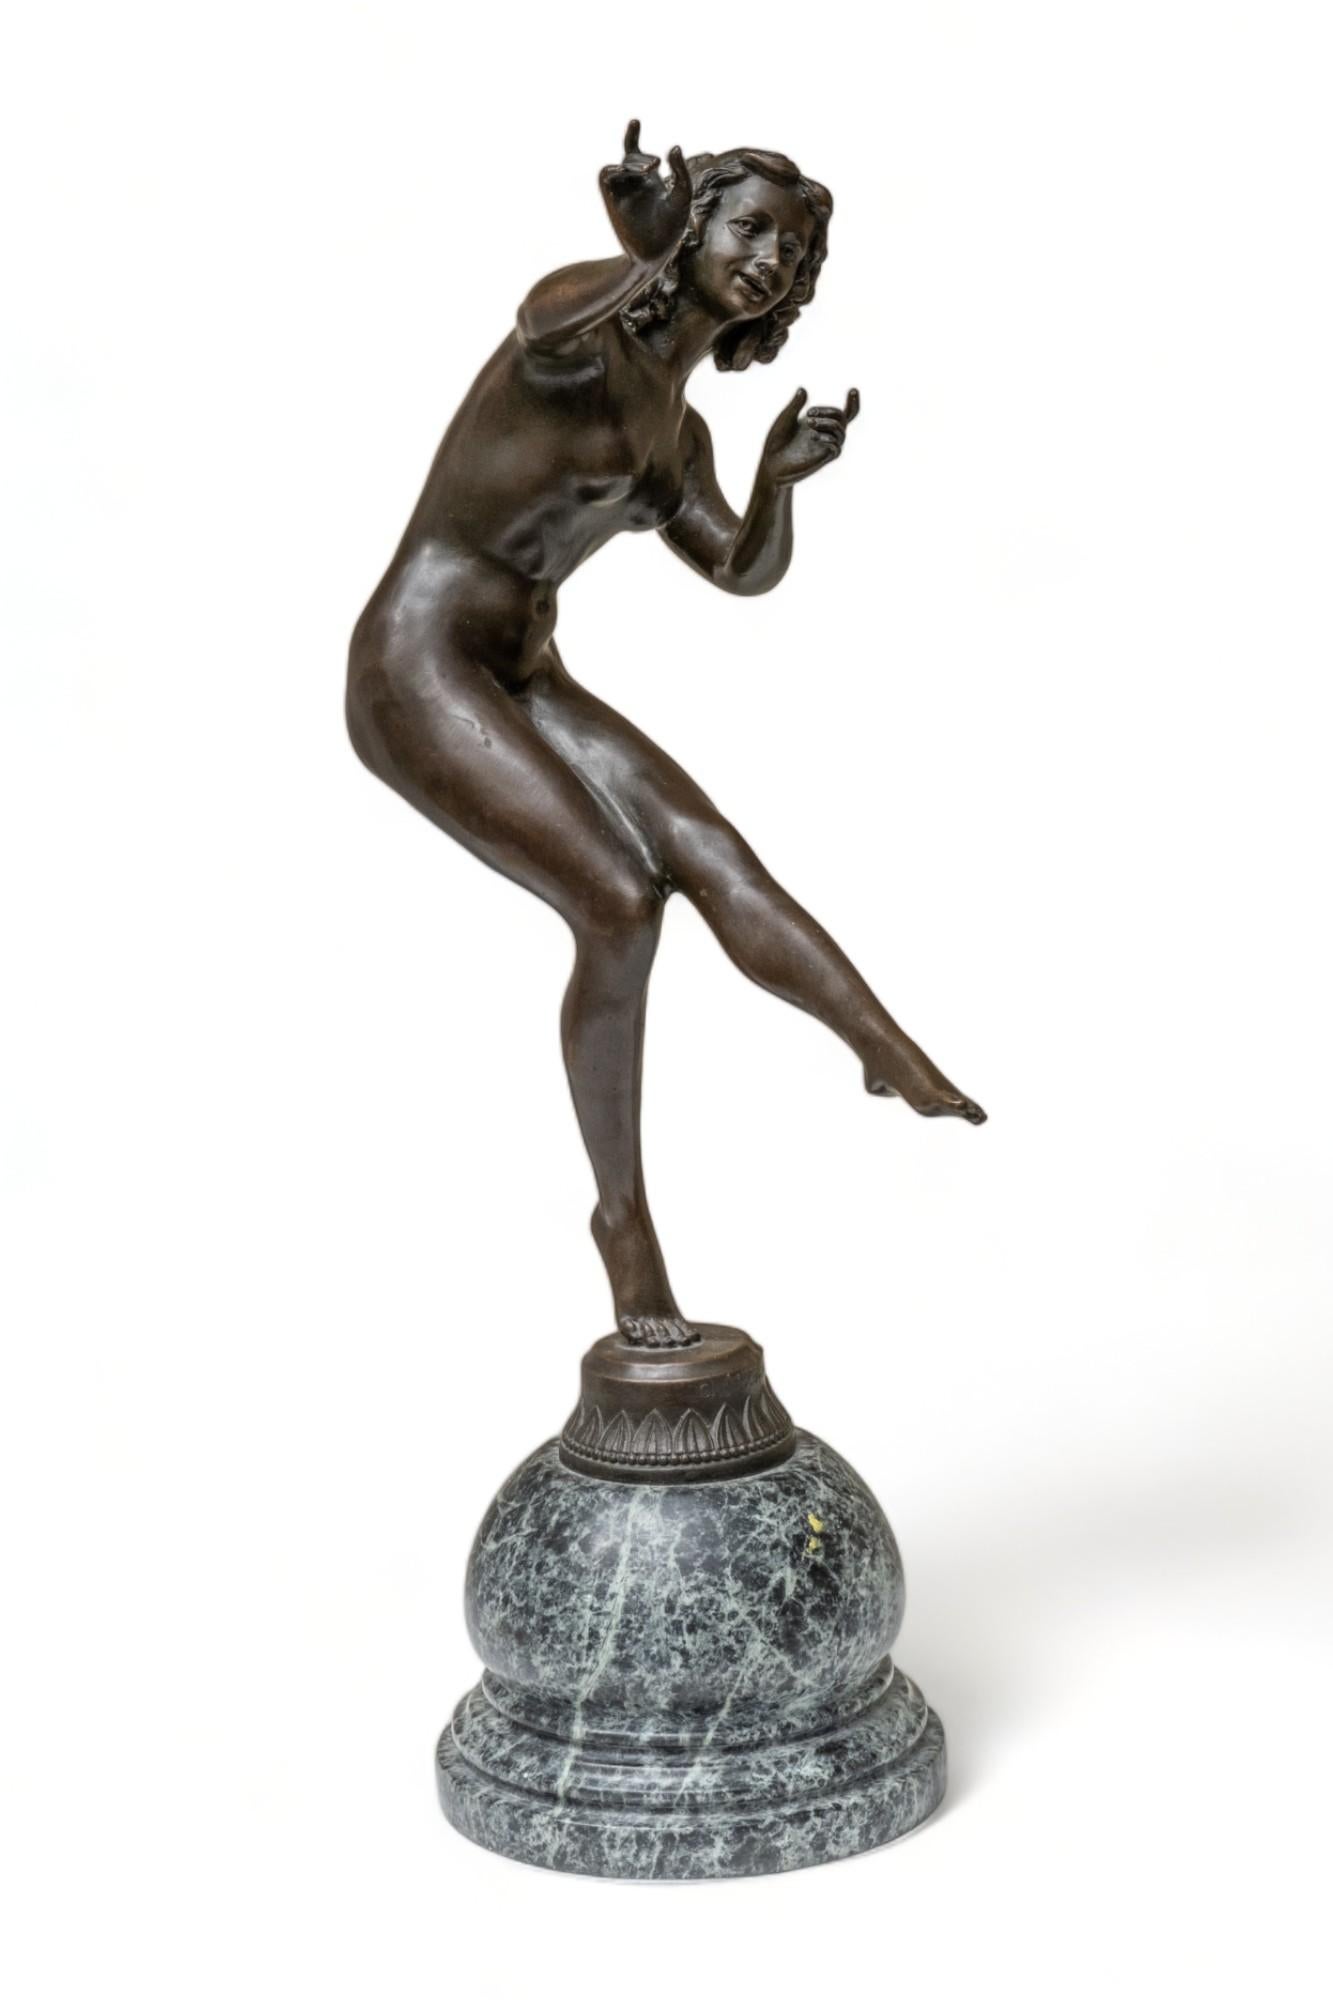 Claire Colinet signiert Frühes 20. Jahrhundert Bronze-Skulptur auf Marmorsockel
Claire Colinet war eine in Belgien geborene Bildhauerin, die vor allem zu Beginn des 20. Jahrhunderts arbeitete. Sie ist bekannt für ihre exquisiten Art-Déco-Figuren,